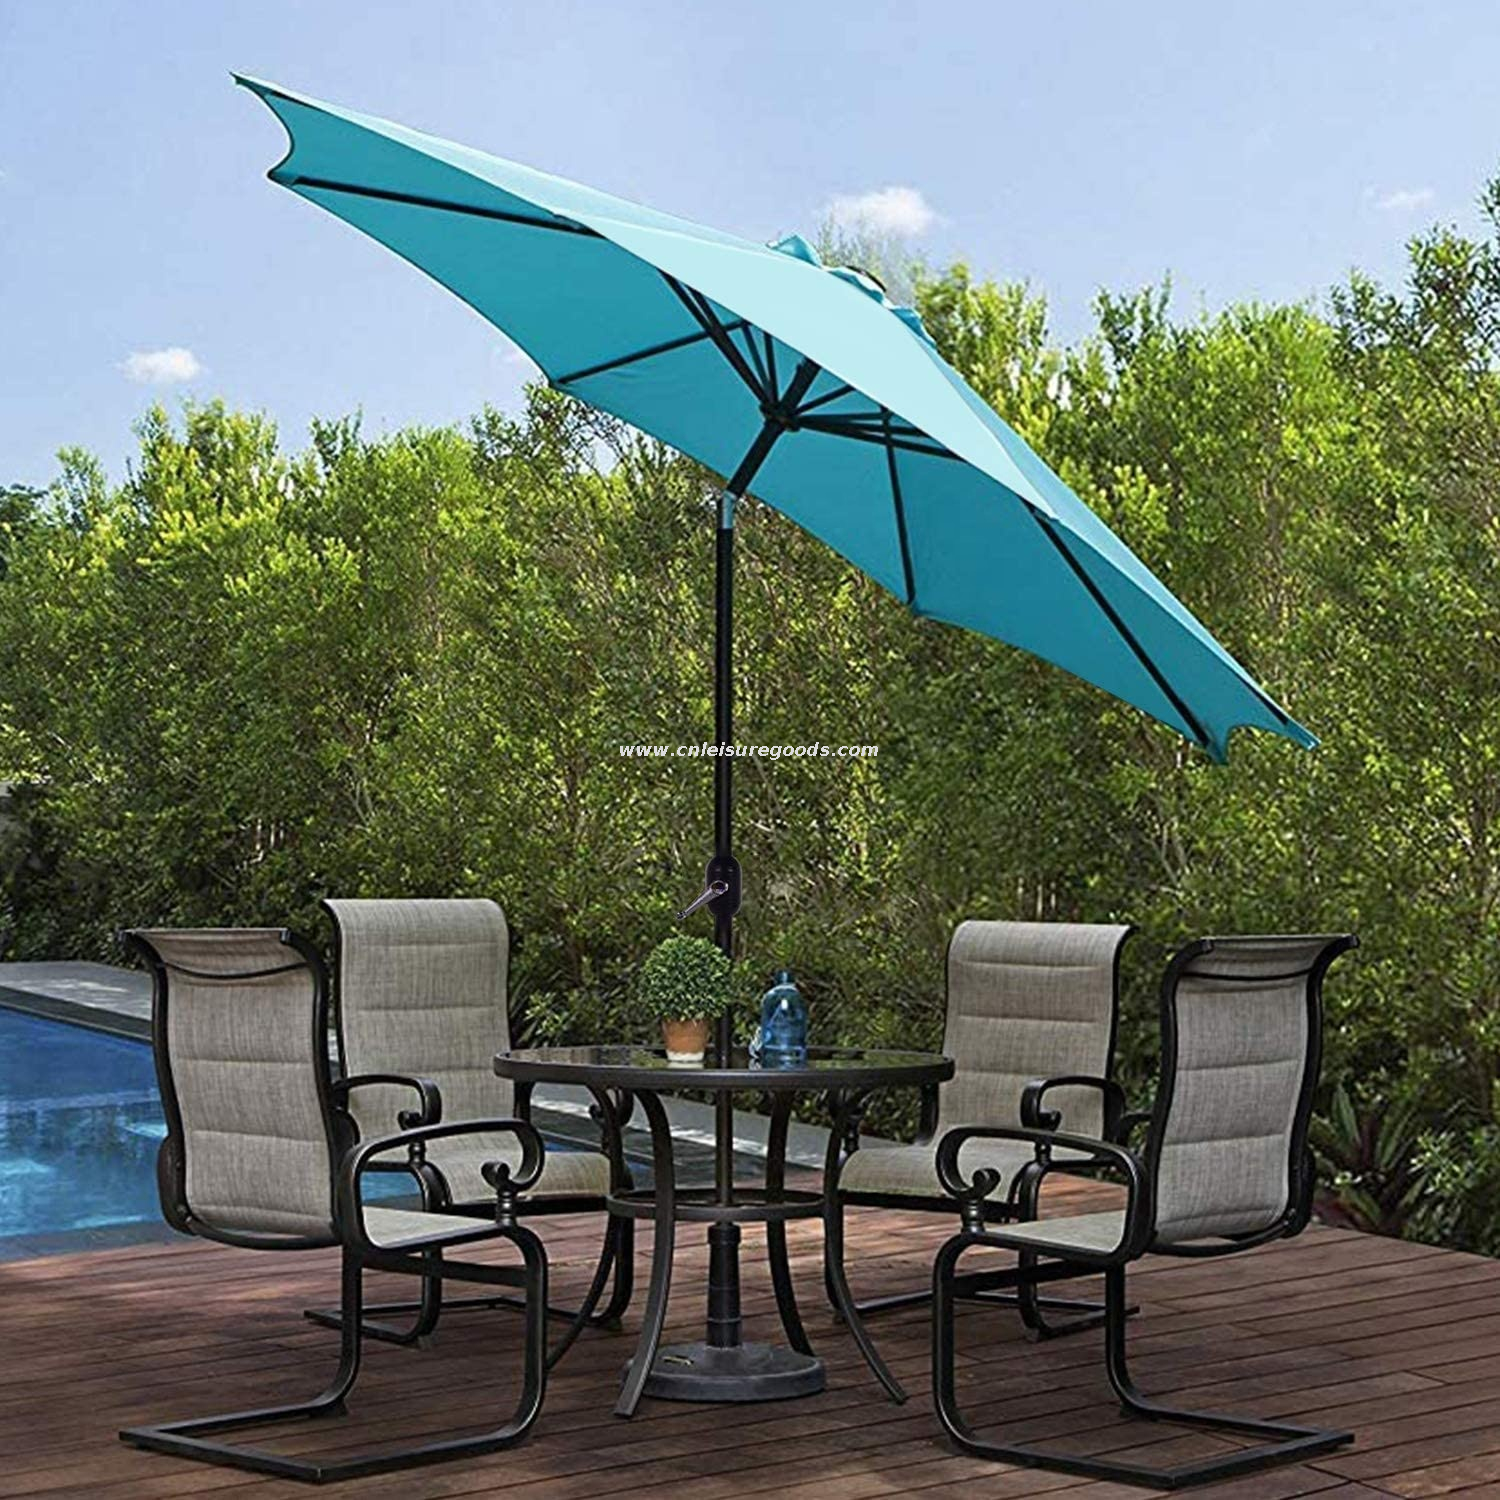 Uplion Patio Parasol Umbrella with Push Button Tilt Crank, Lawn Garden Deck Sun Umbrella Outdoor, Backyard Market Umbrella